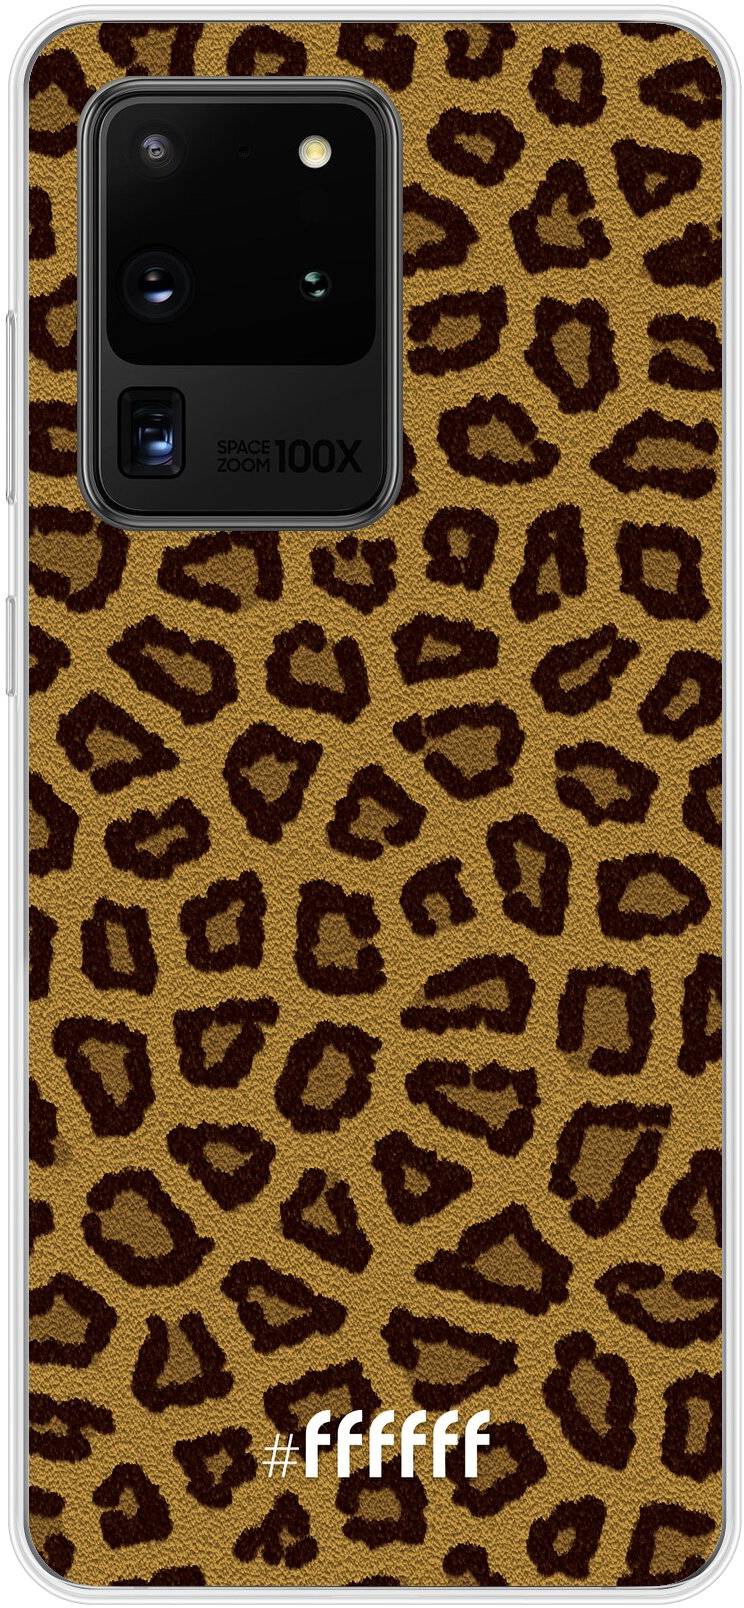 Leopard Print Galaxy S20 Ultra